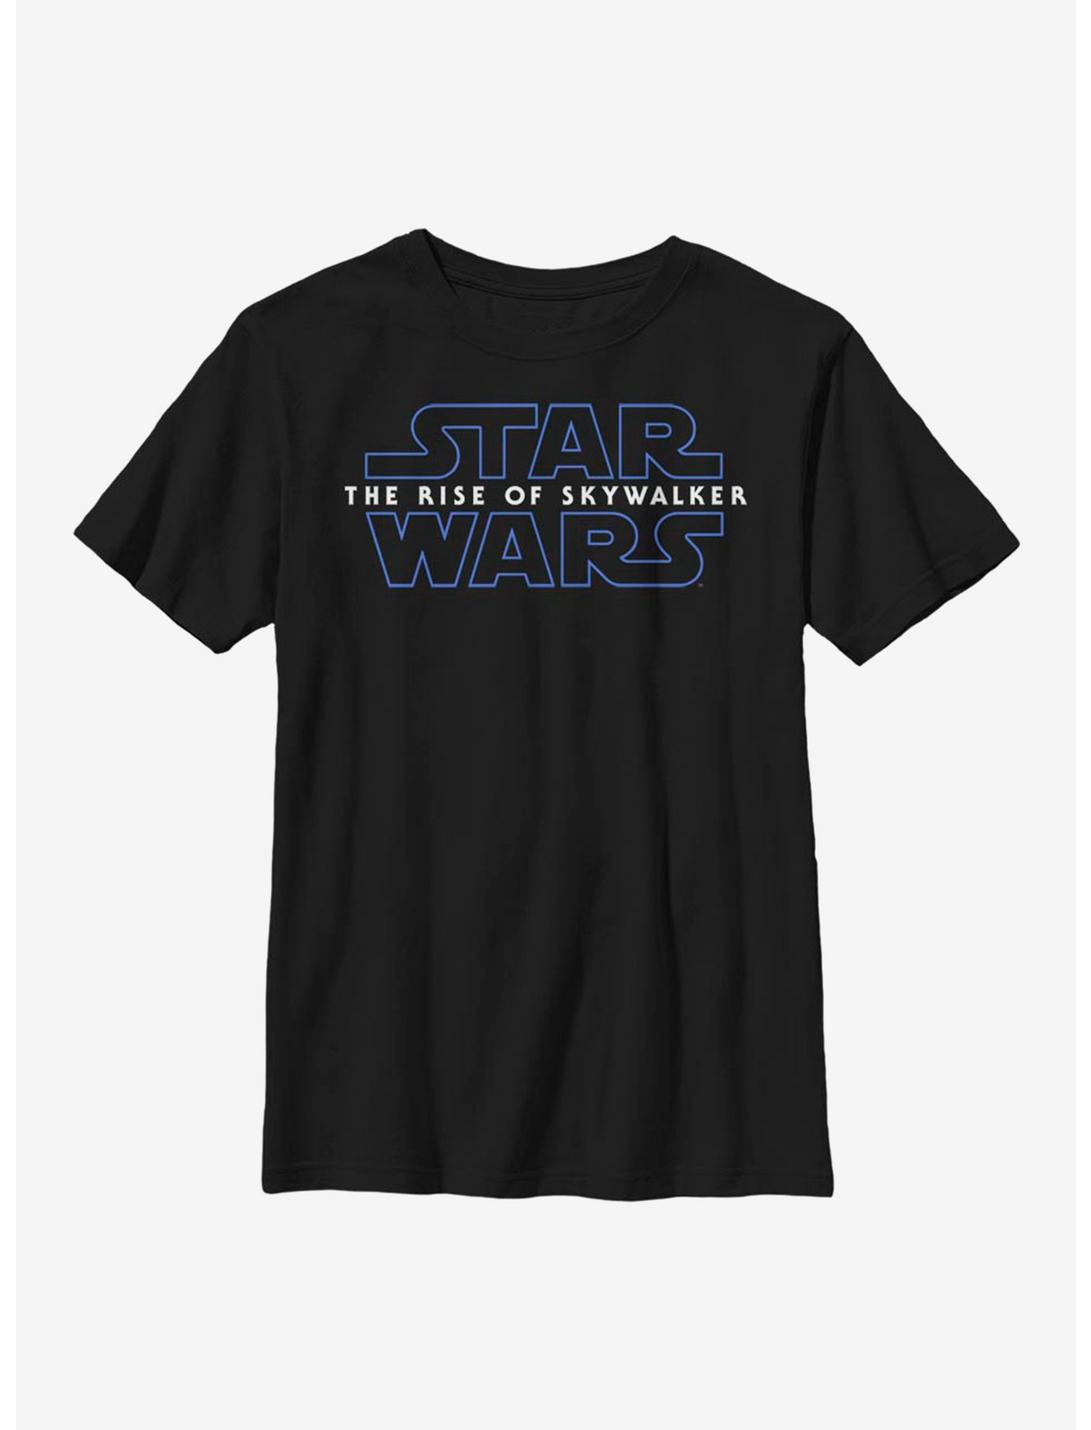 Star Wars Episode IX The Rise Of Skywalker Logo Youth T-Shirt, BLACK, hi-res